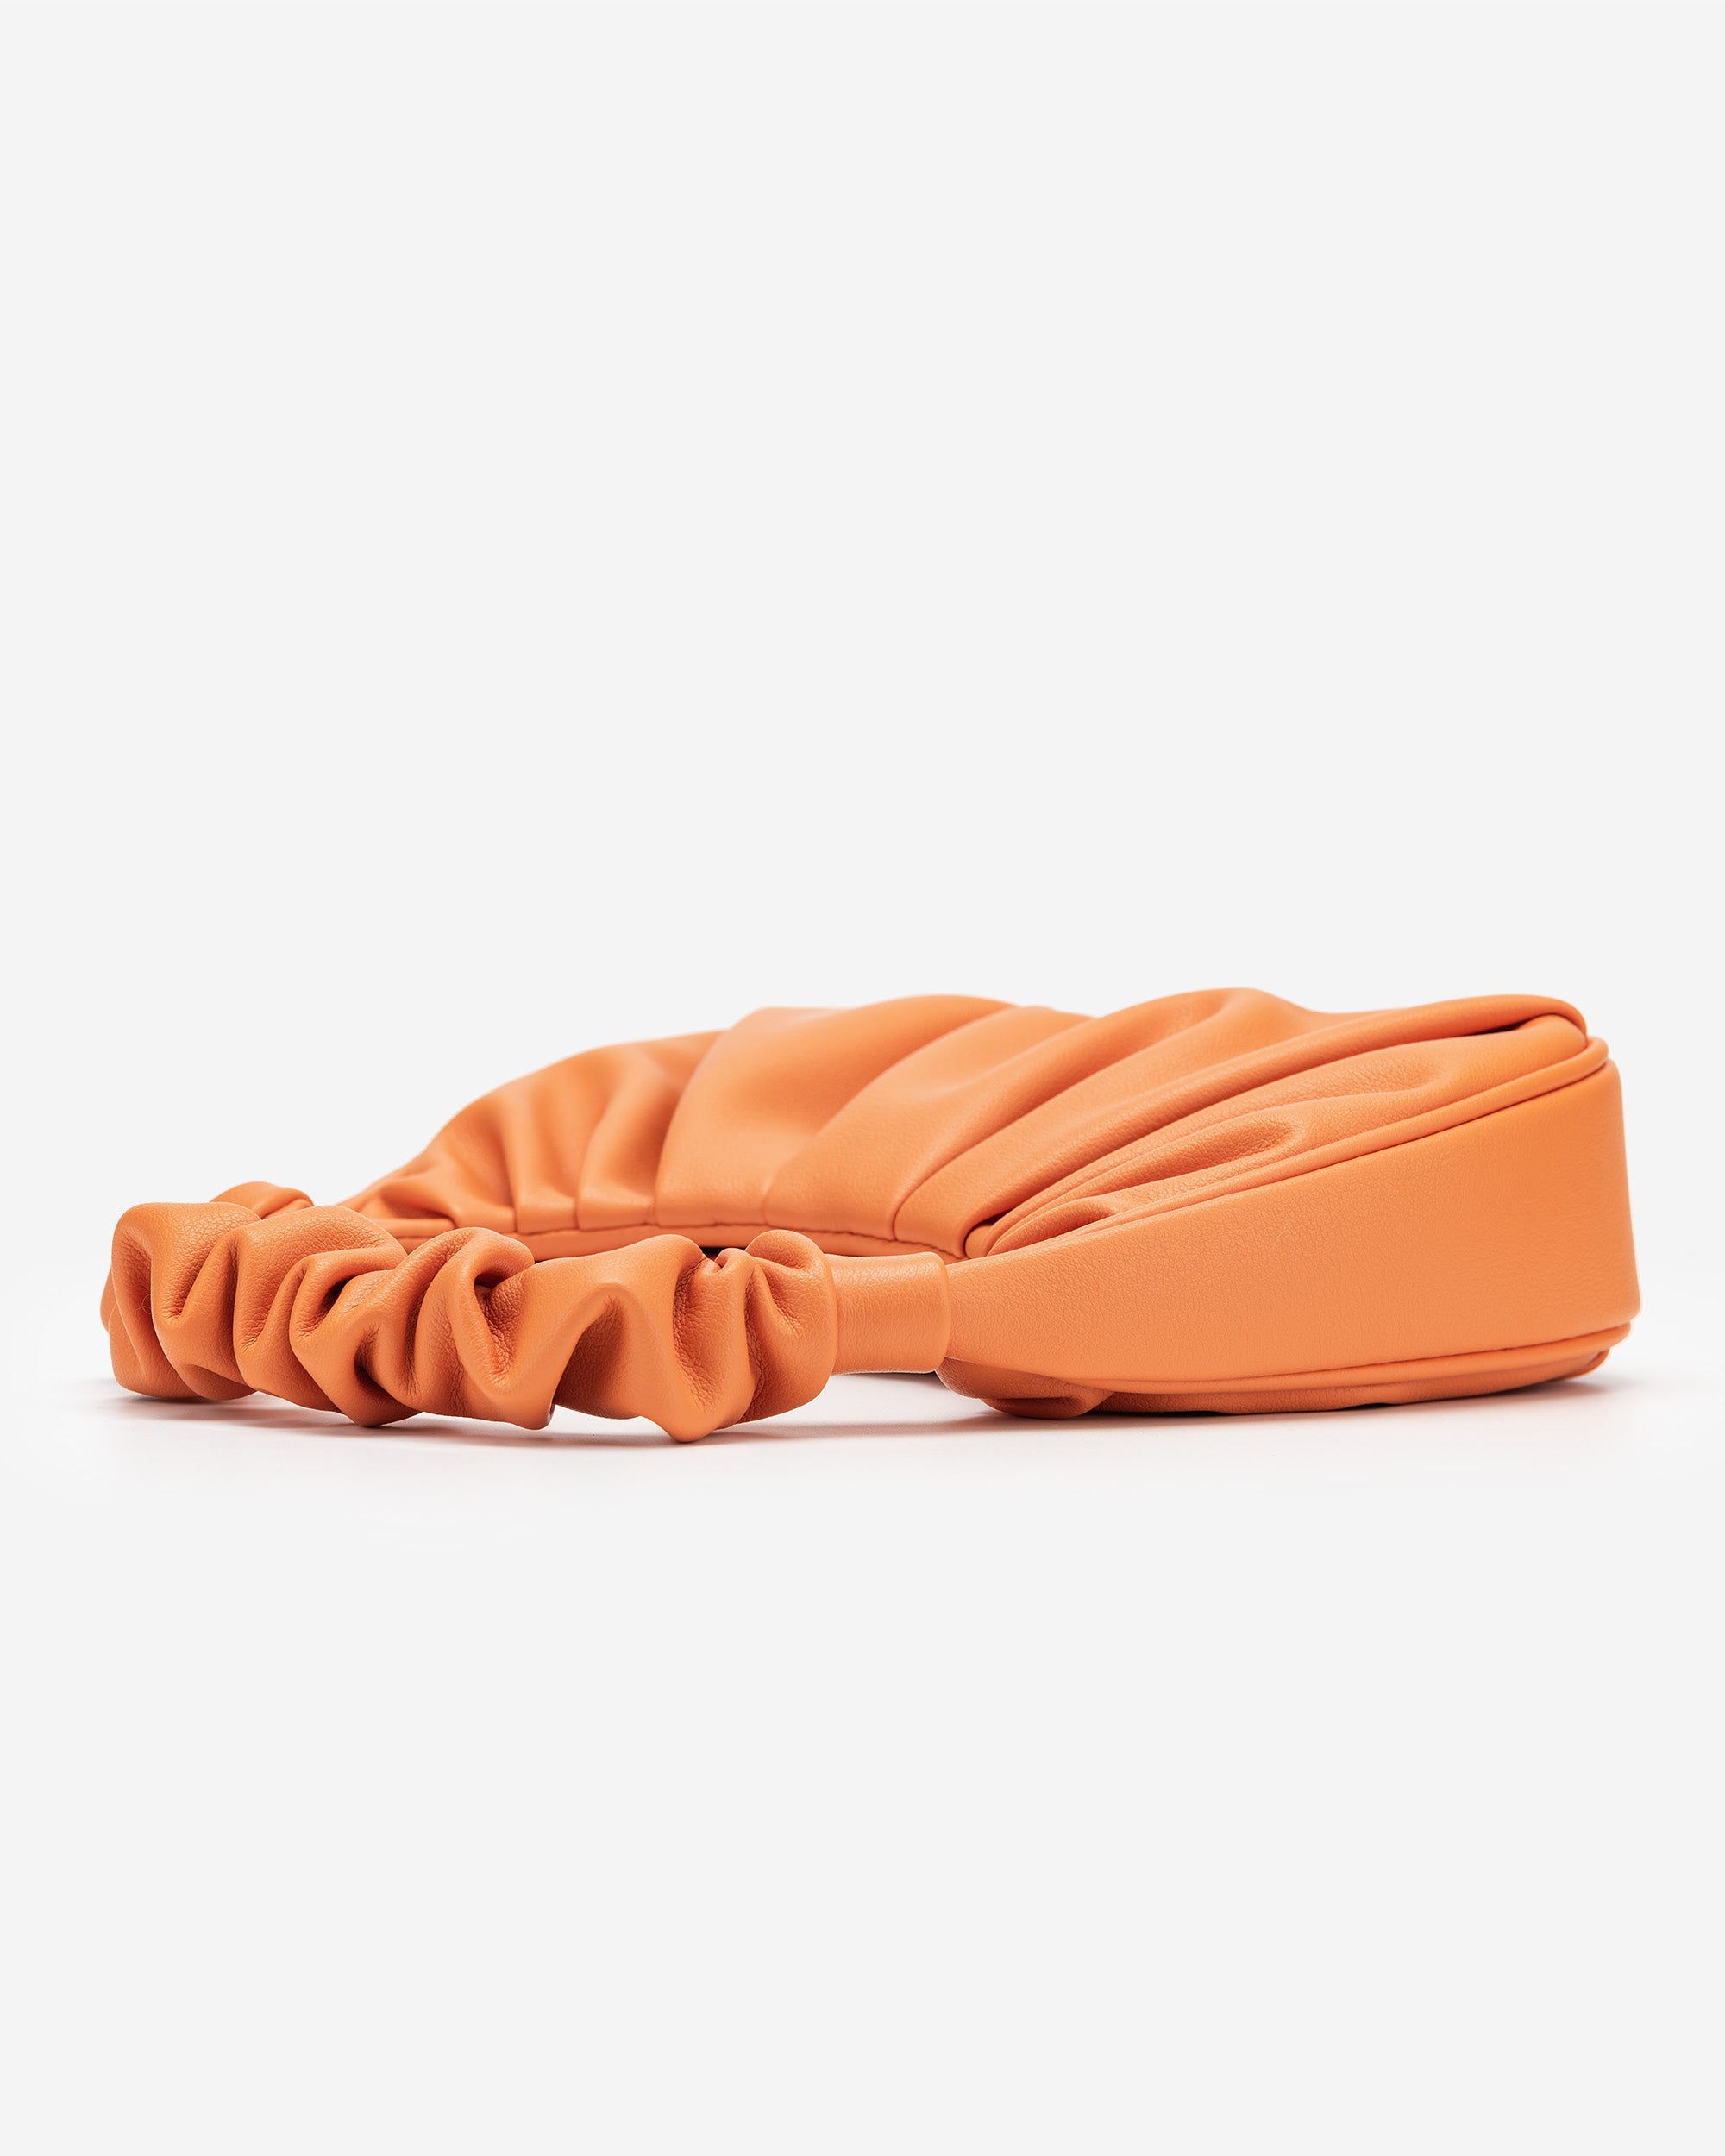 Gabbi 手提包 - 橙色